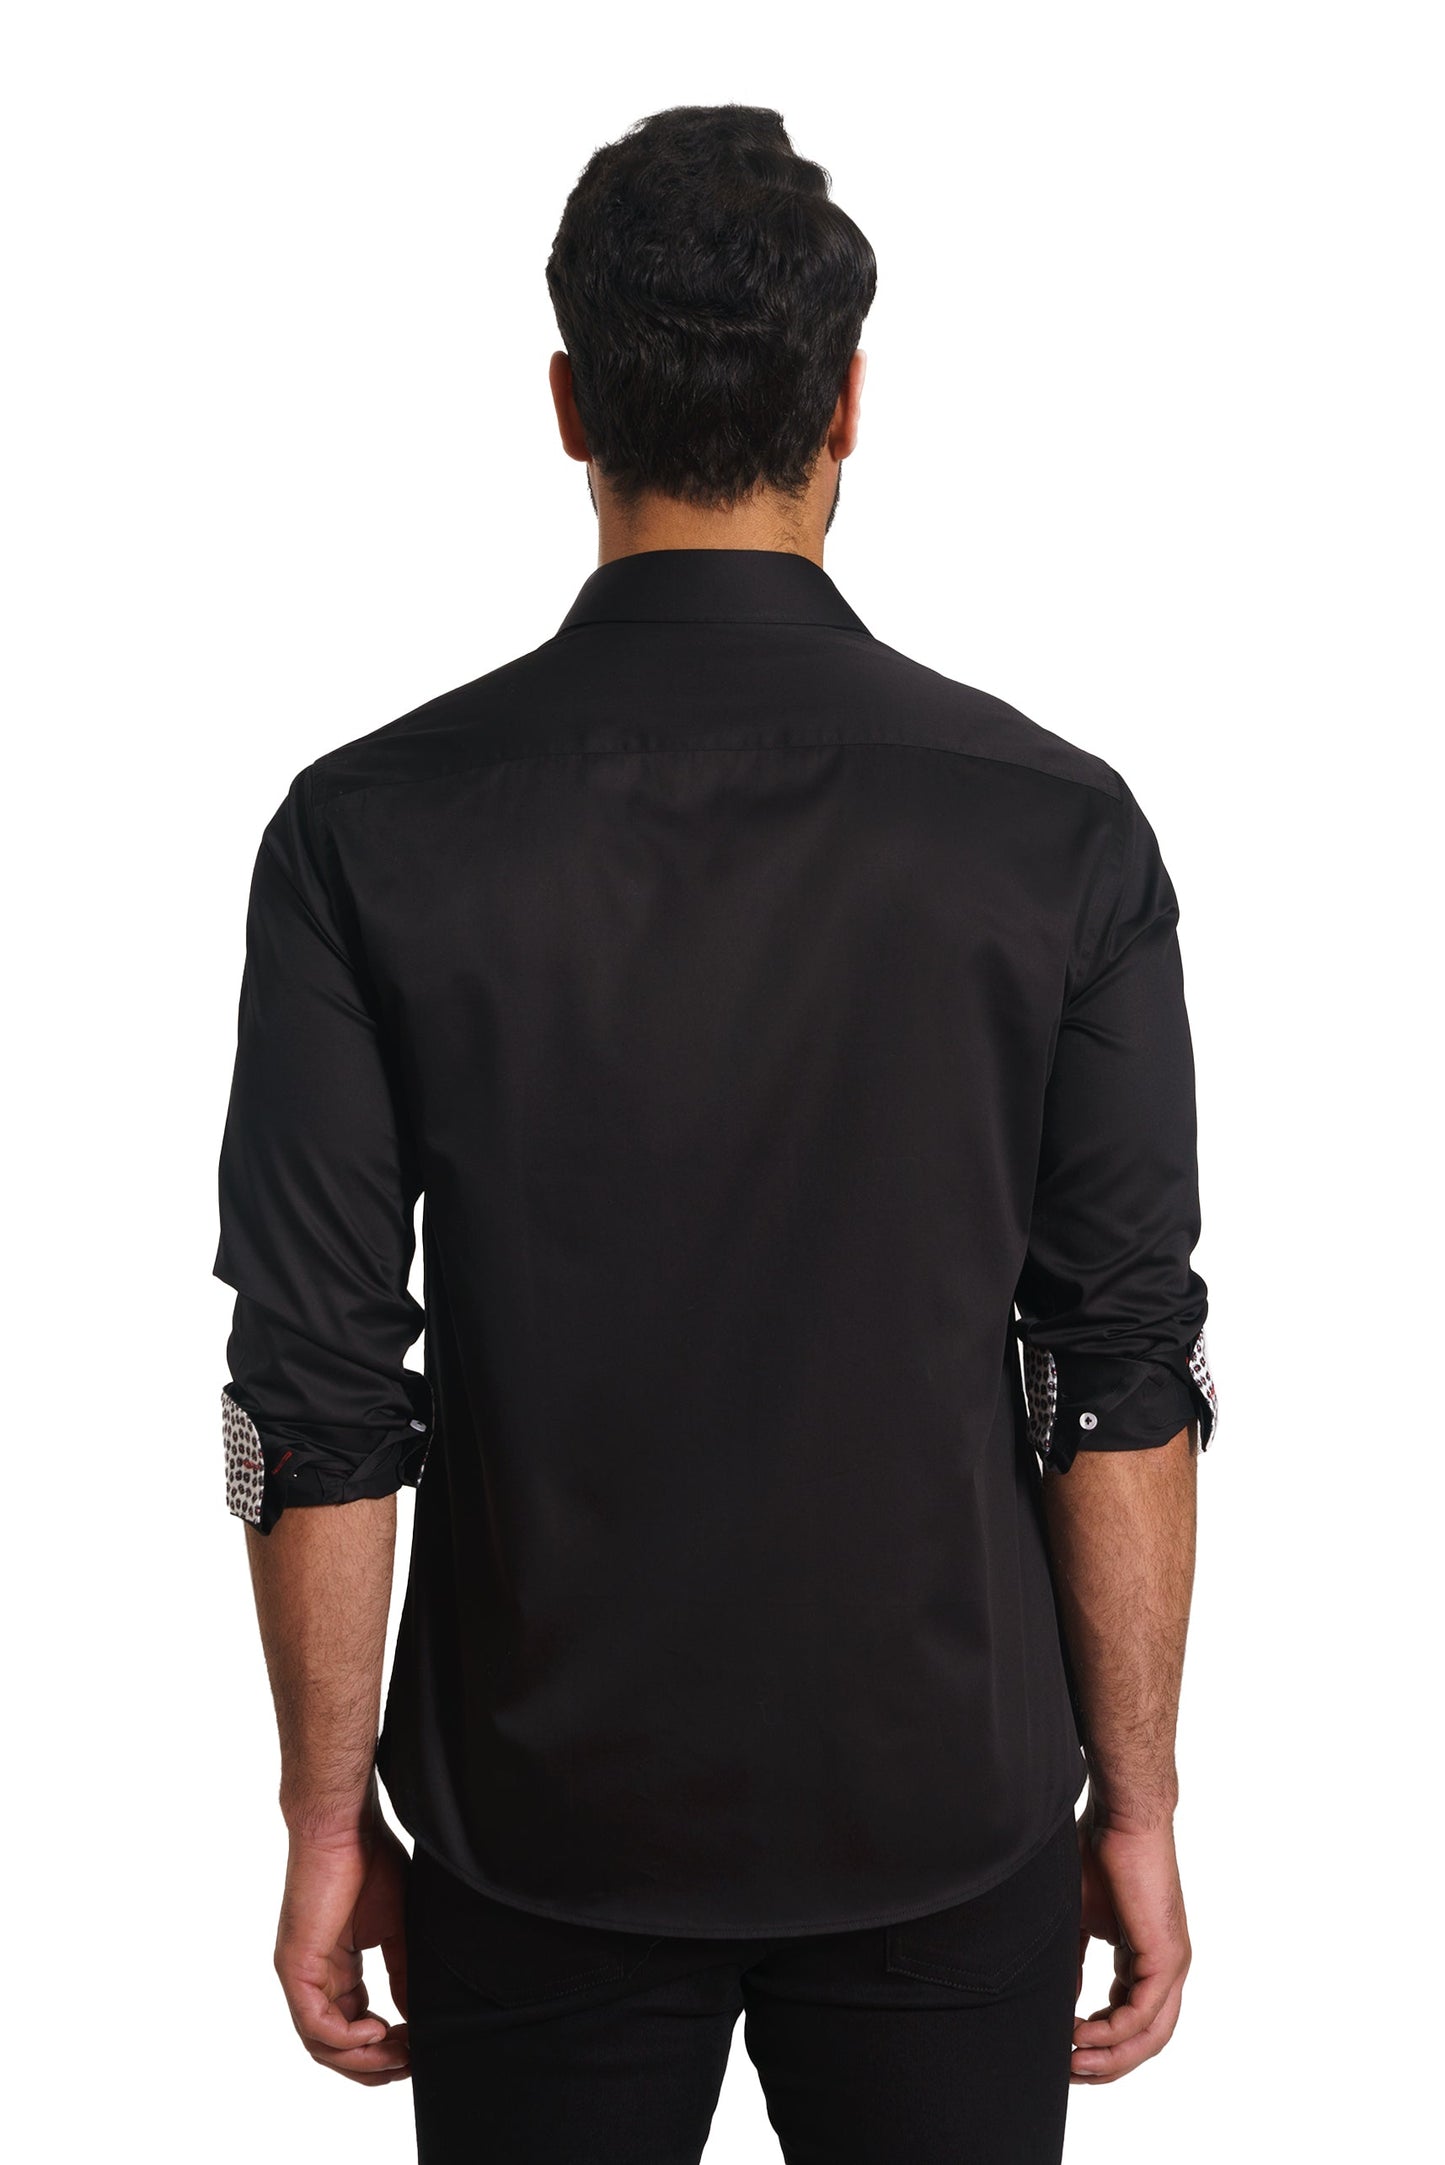 Black Long Sleeve Shirt TH-2869 Back